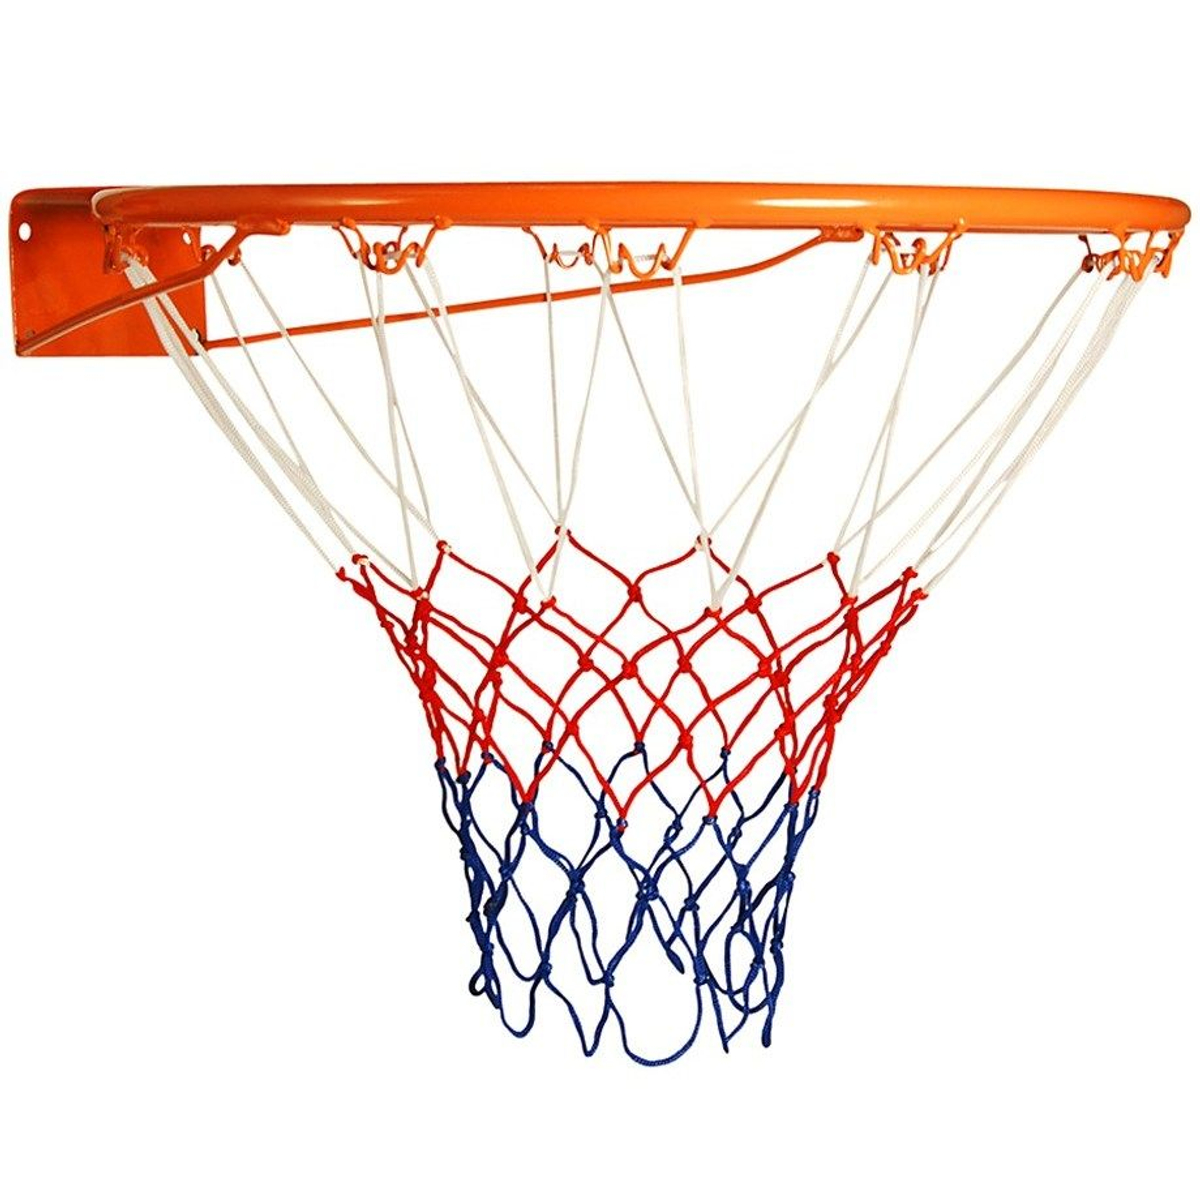 AngelSports Basketbalring 46 cm - Oranje Solid - 18 mm